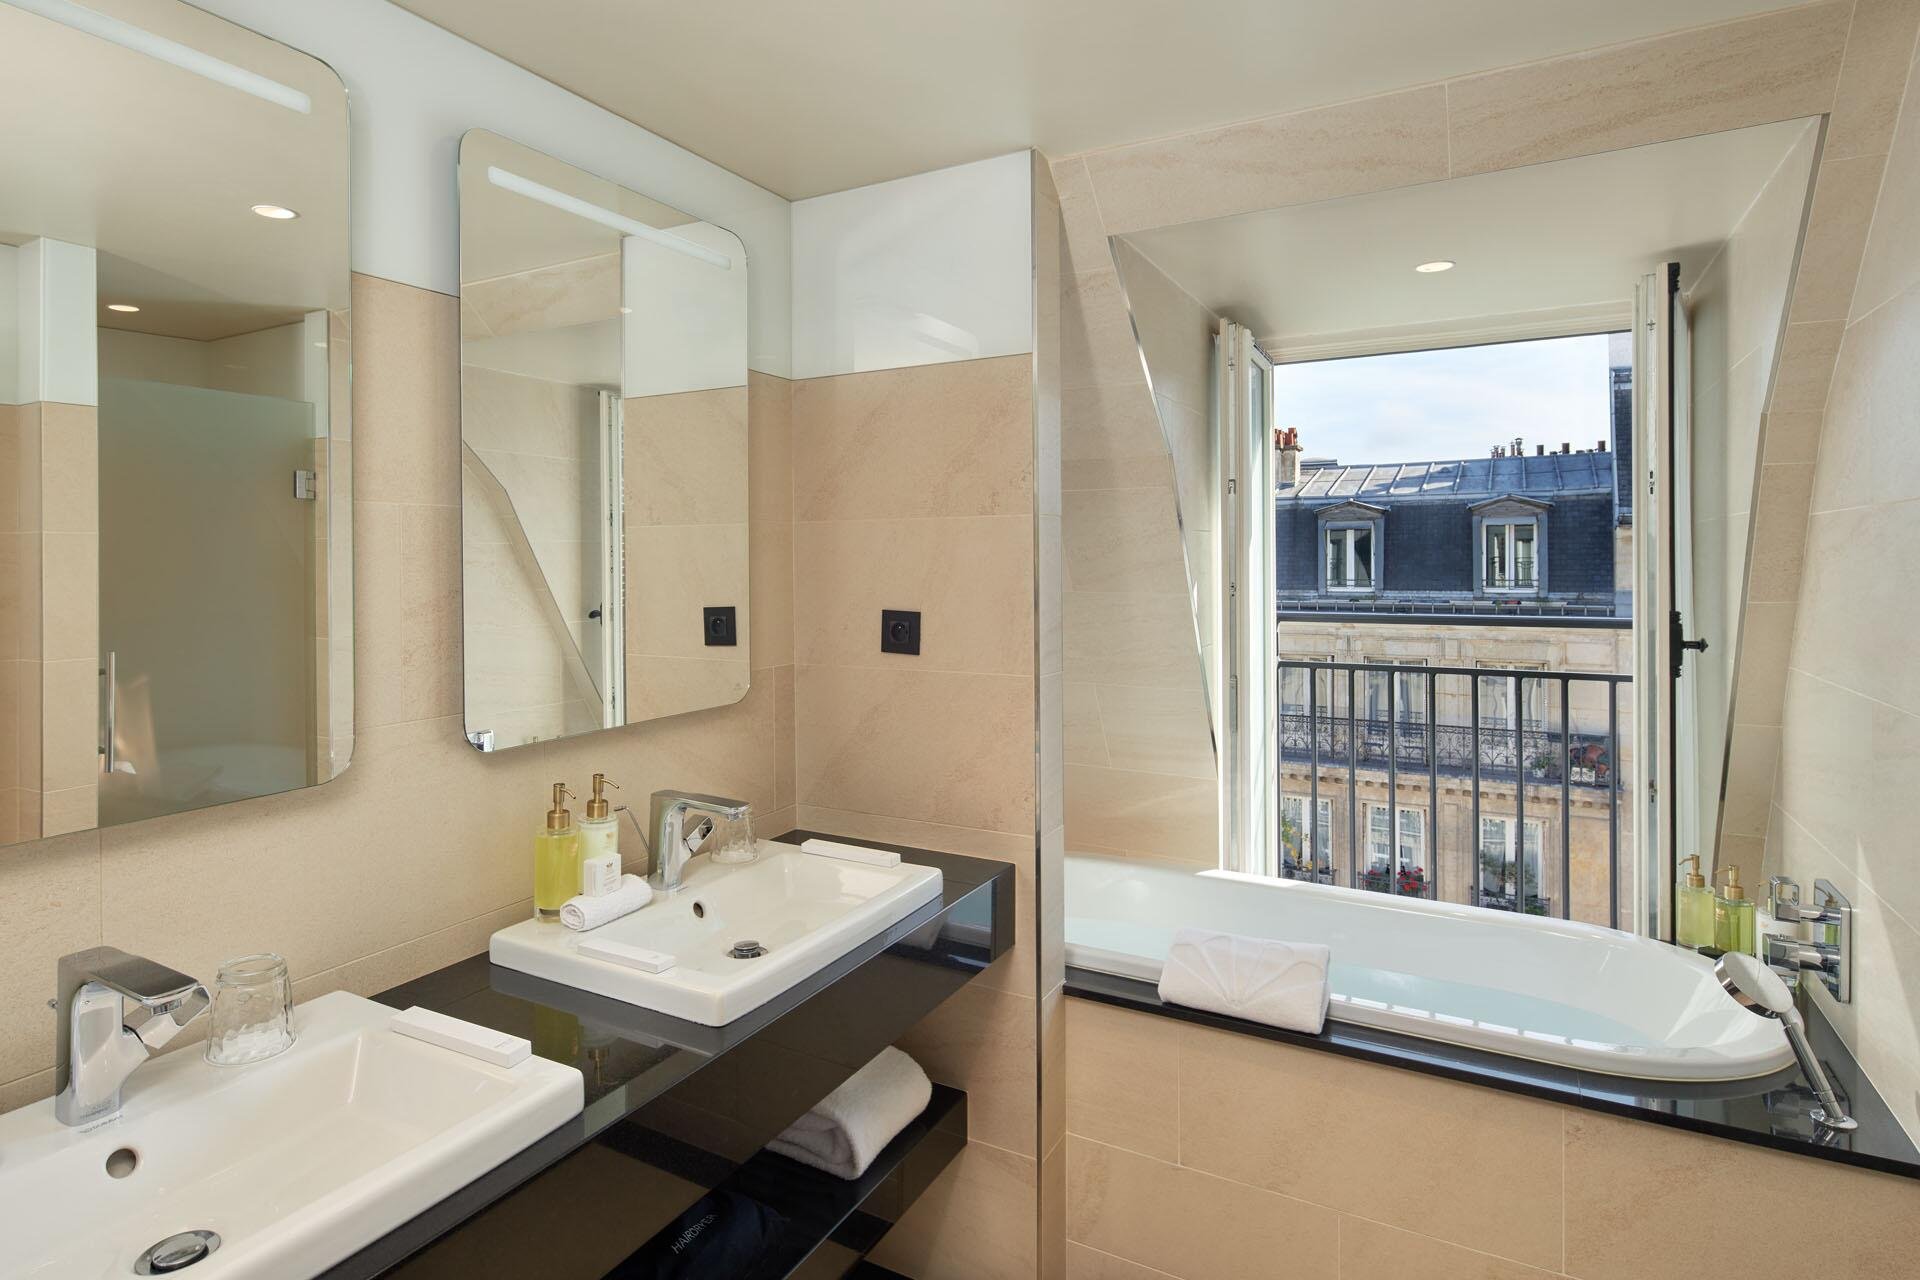 Maison Albar Hotels Le Pont-Neuf | Junior Suite salle de bain